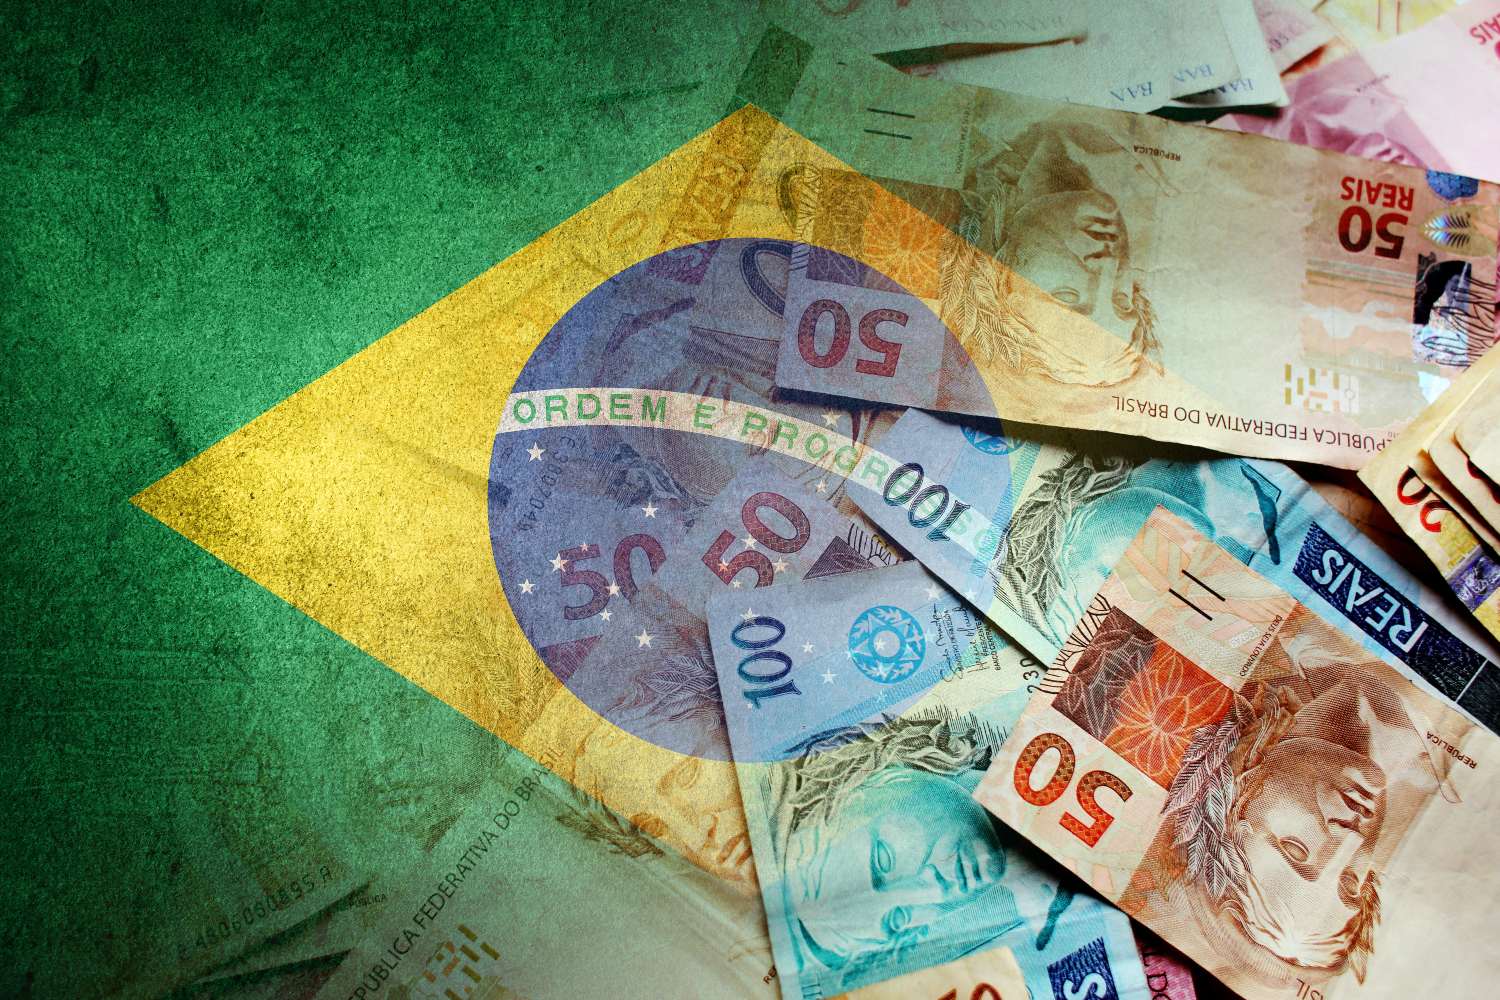 CNT: 36,7% dos brasileiros acham que economia só vai melhorar em 2023